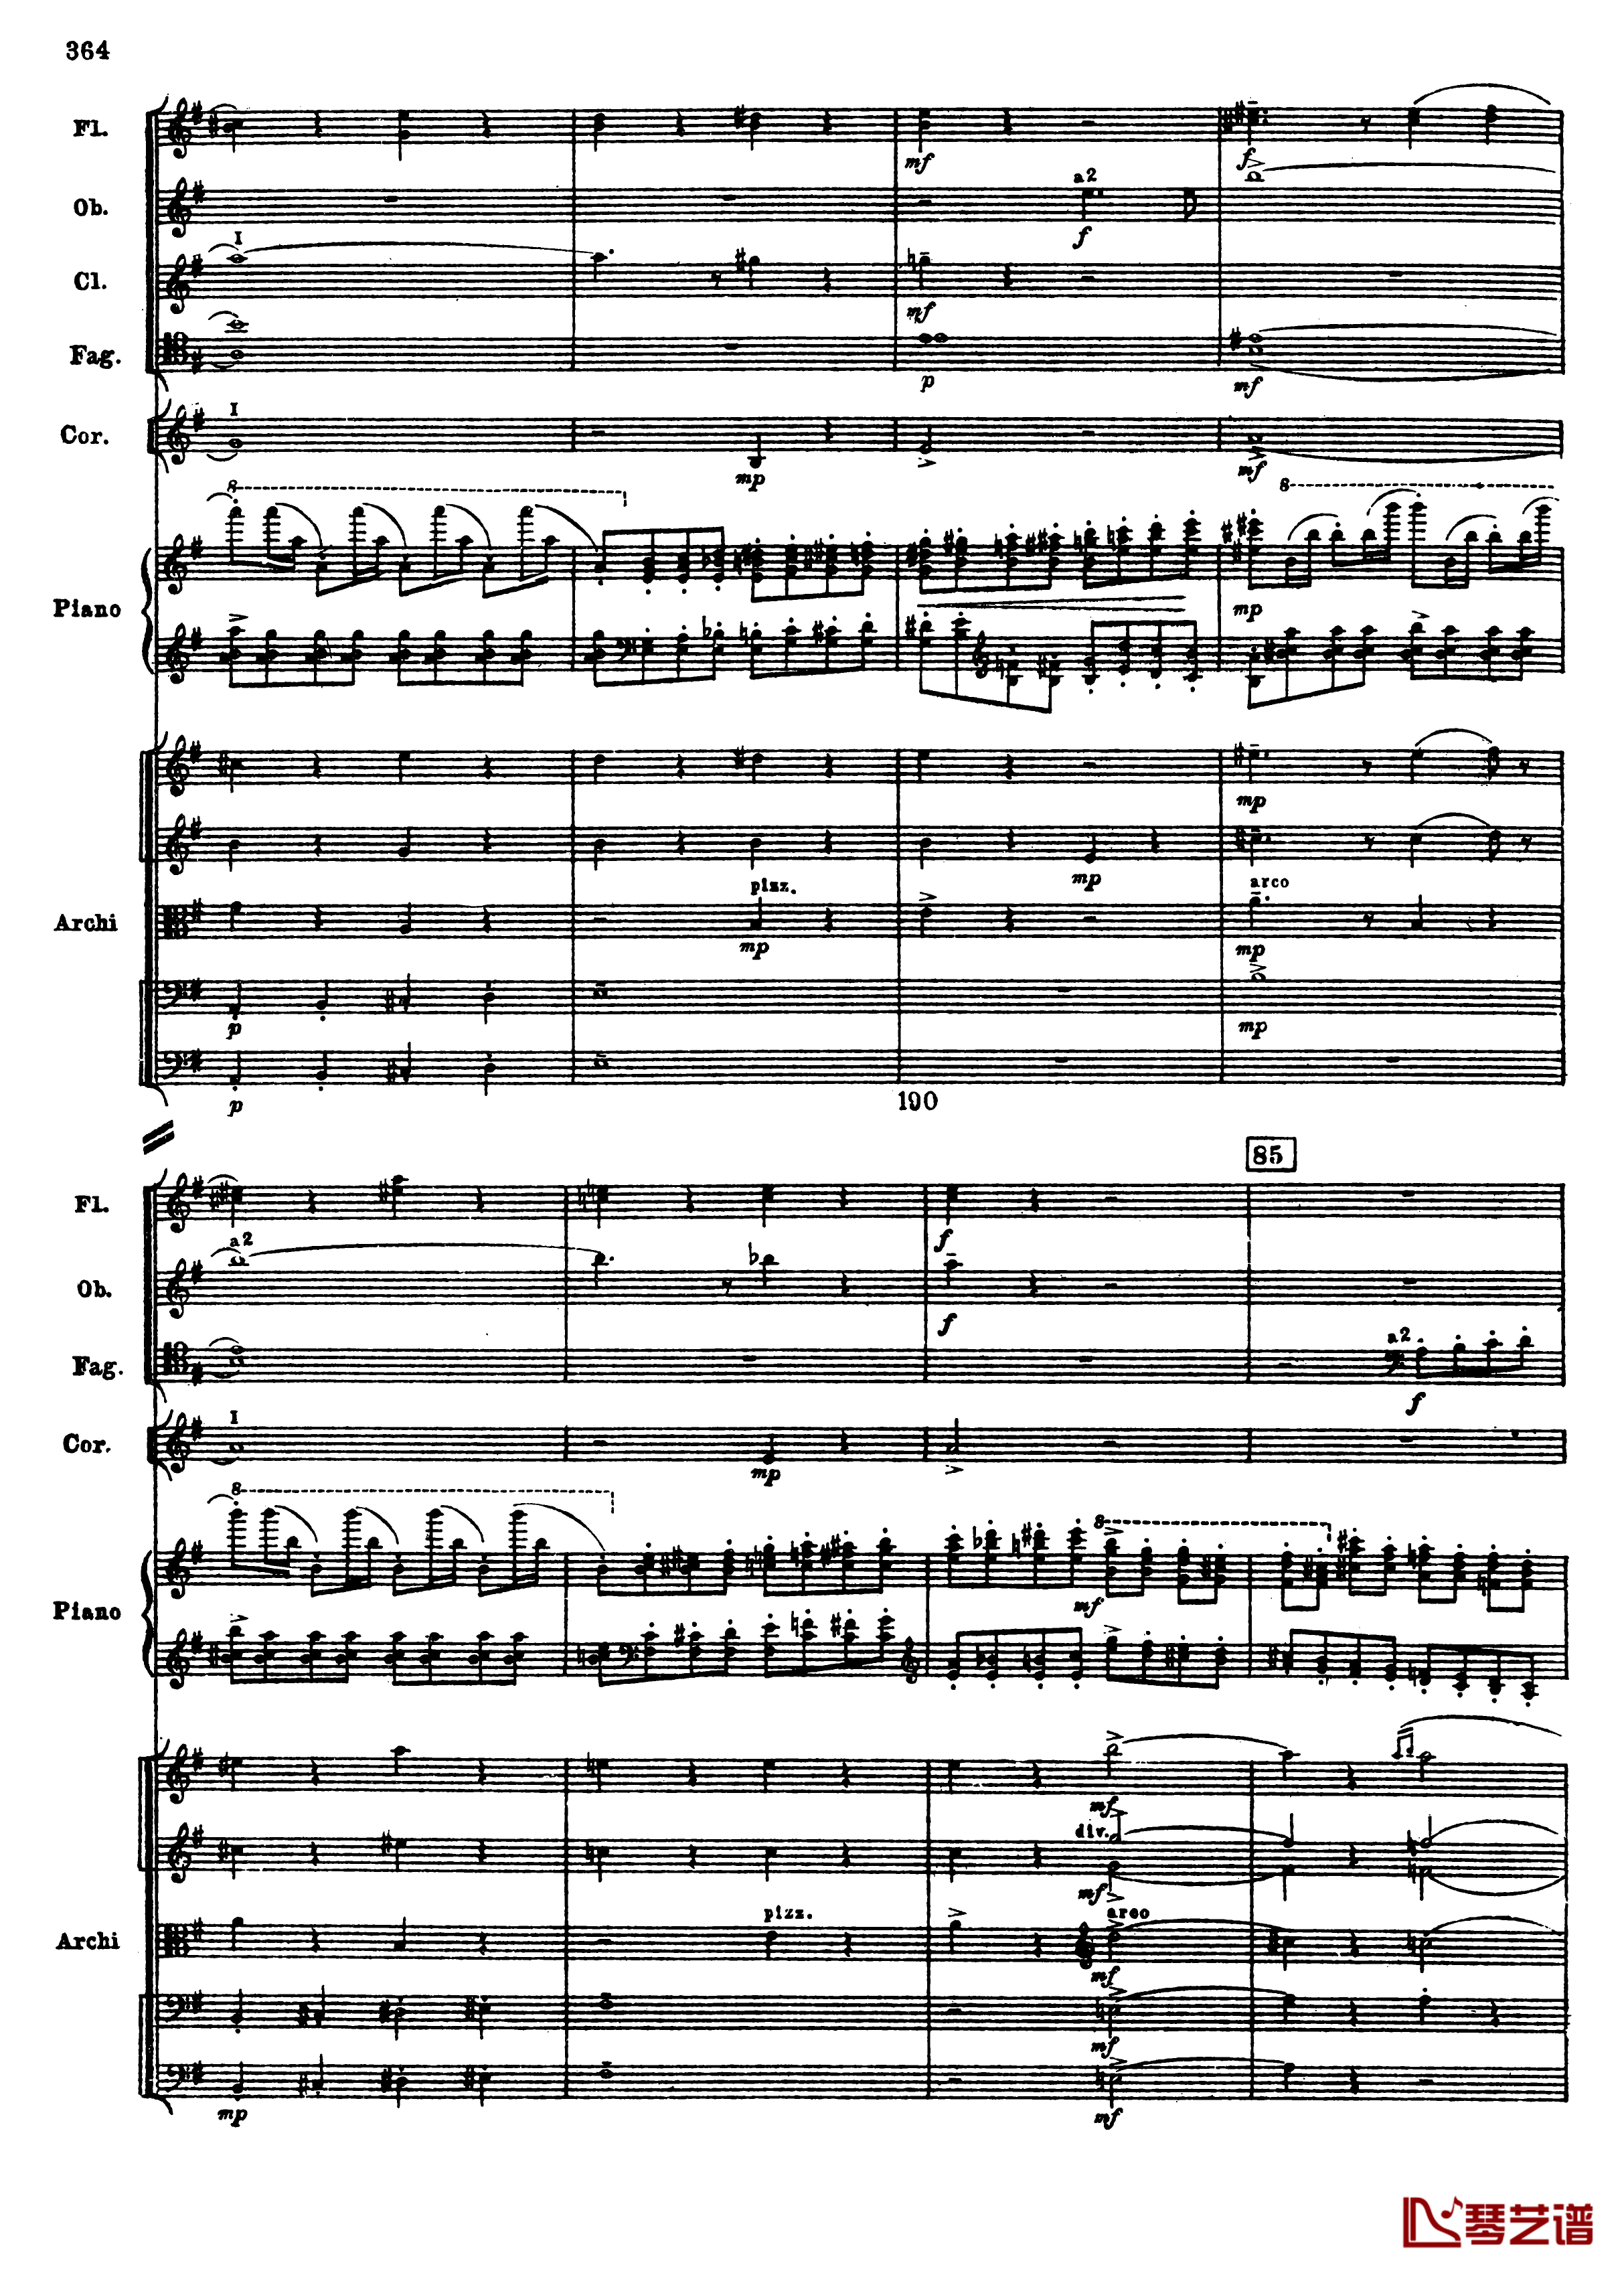 普罗科菲耶夫第三钢琴协奏曲钢琴谱-总谱-普罗科非耶夫96